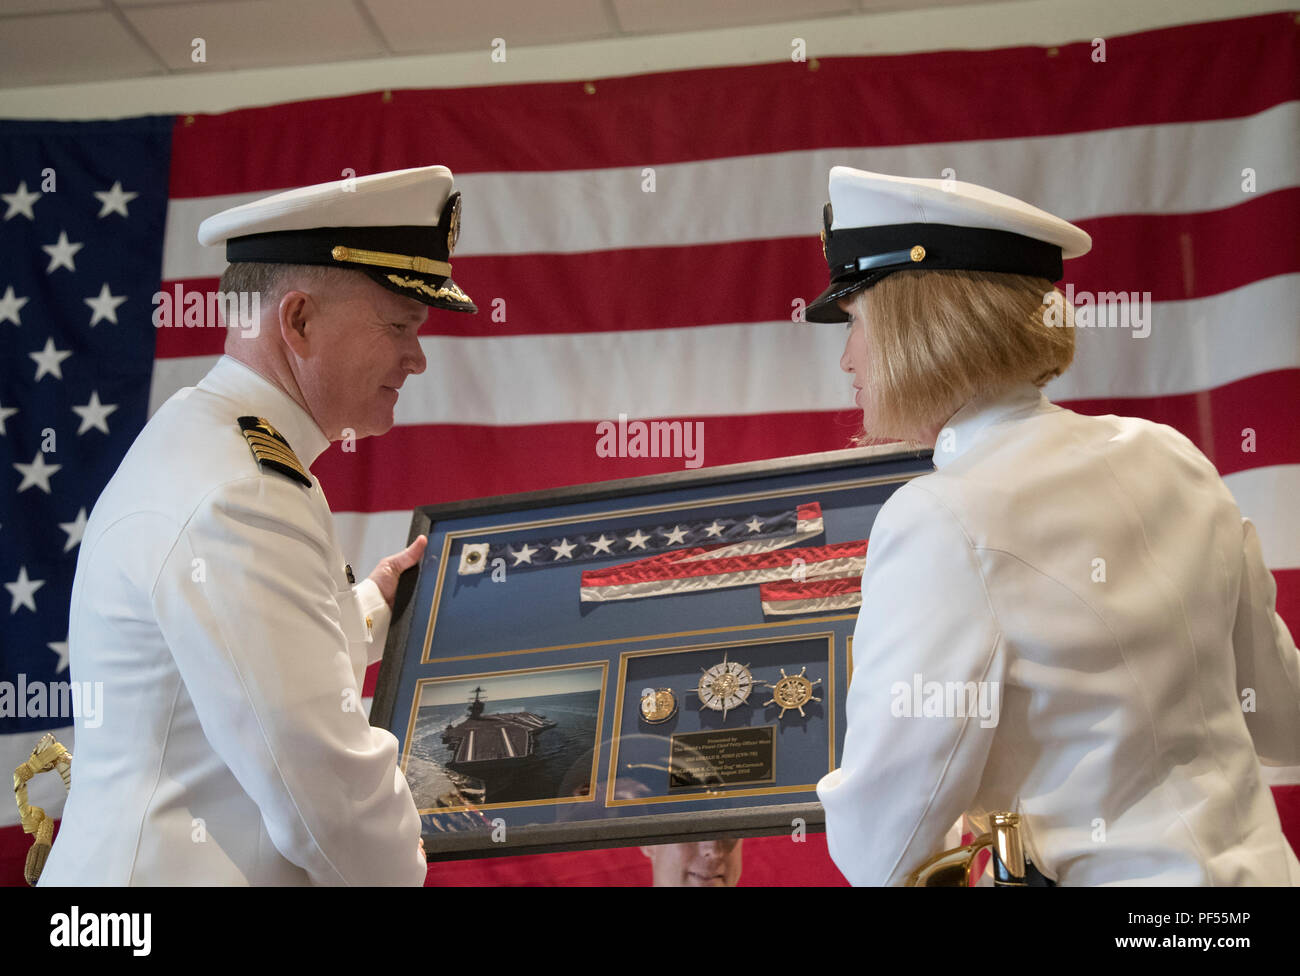 Command Master Chief Virginia Y. Sanders > Naval Air Force, U.S.